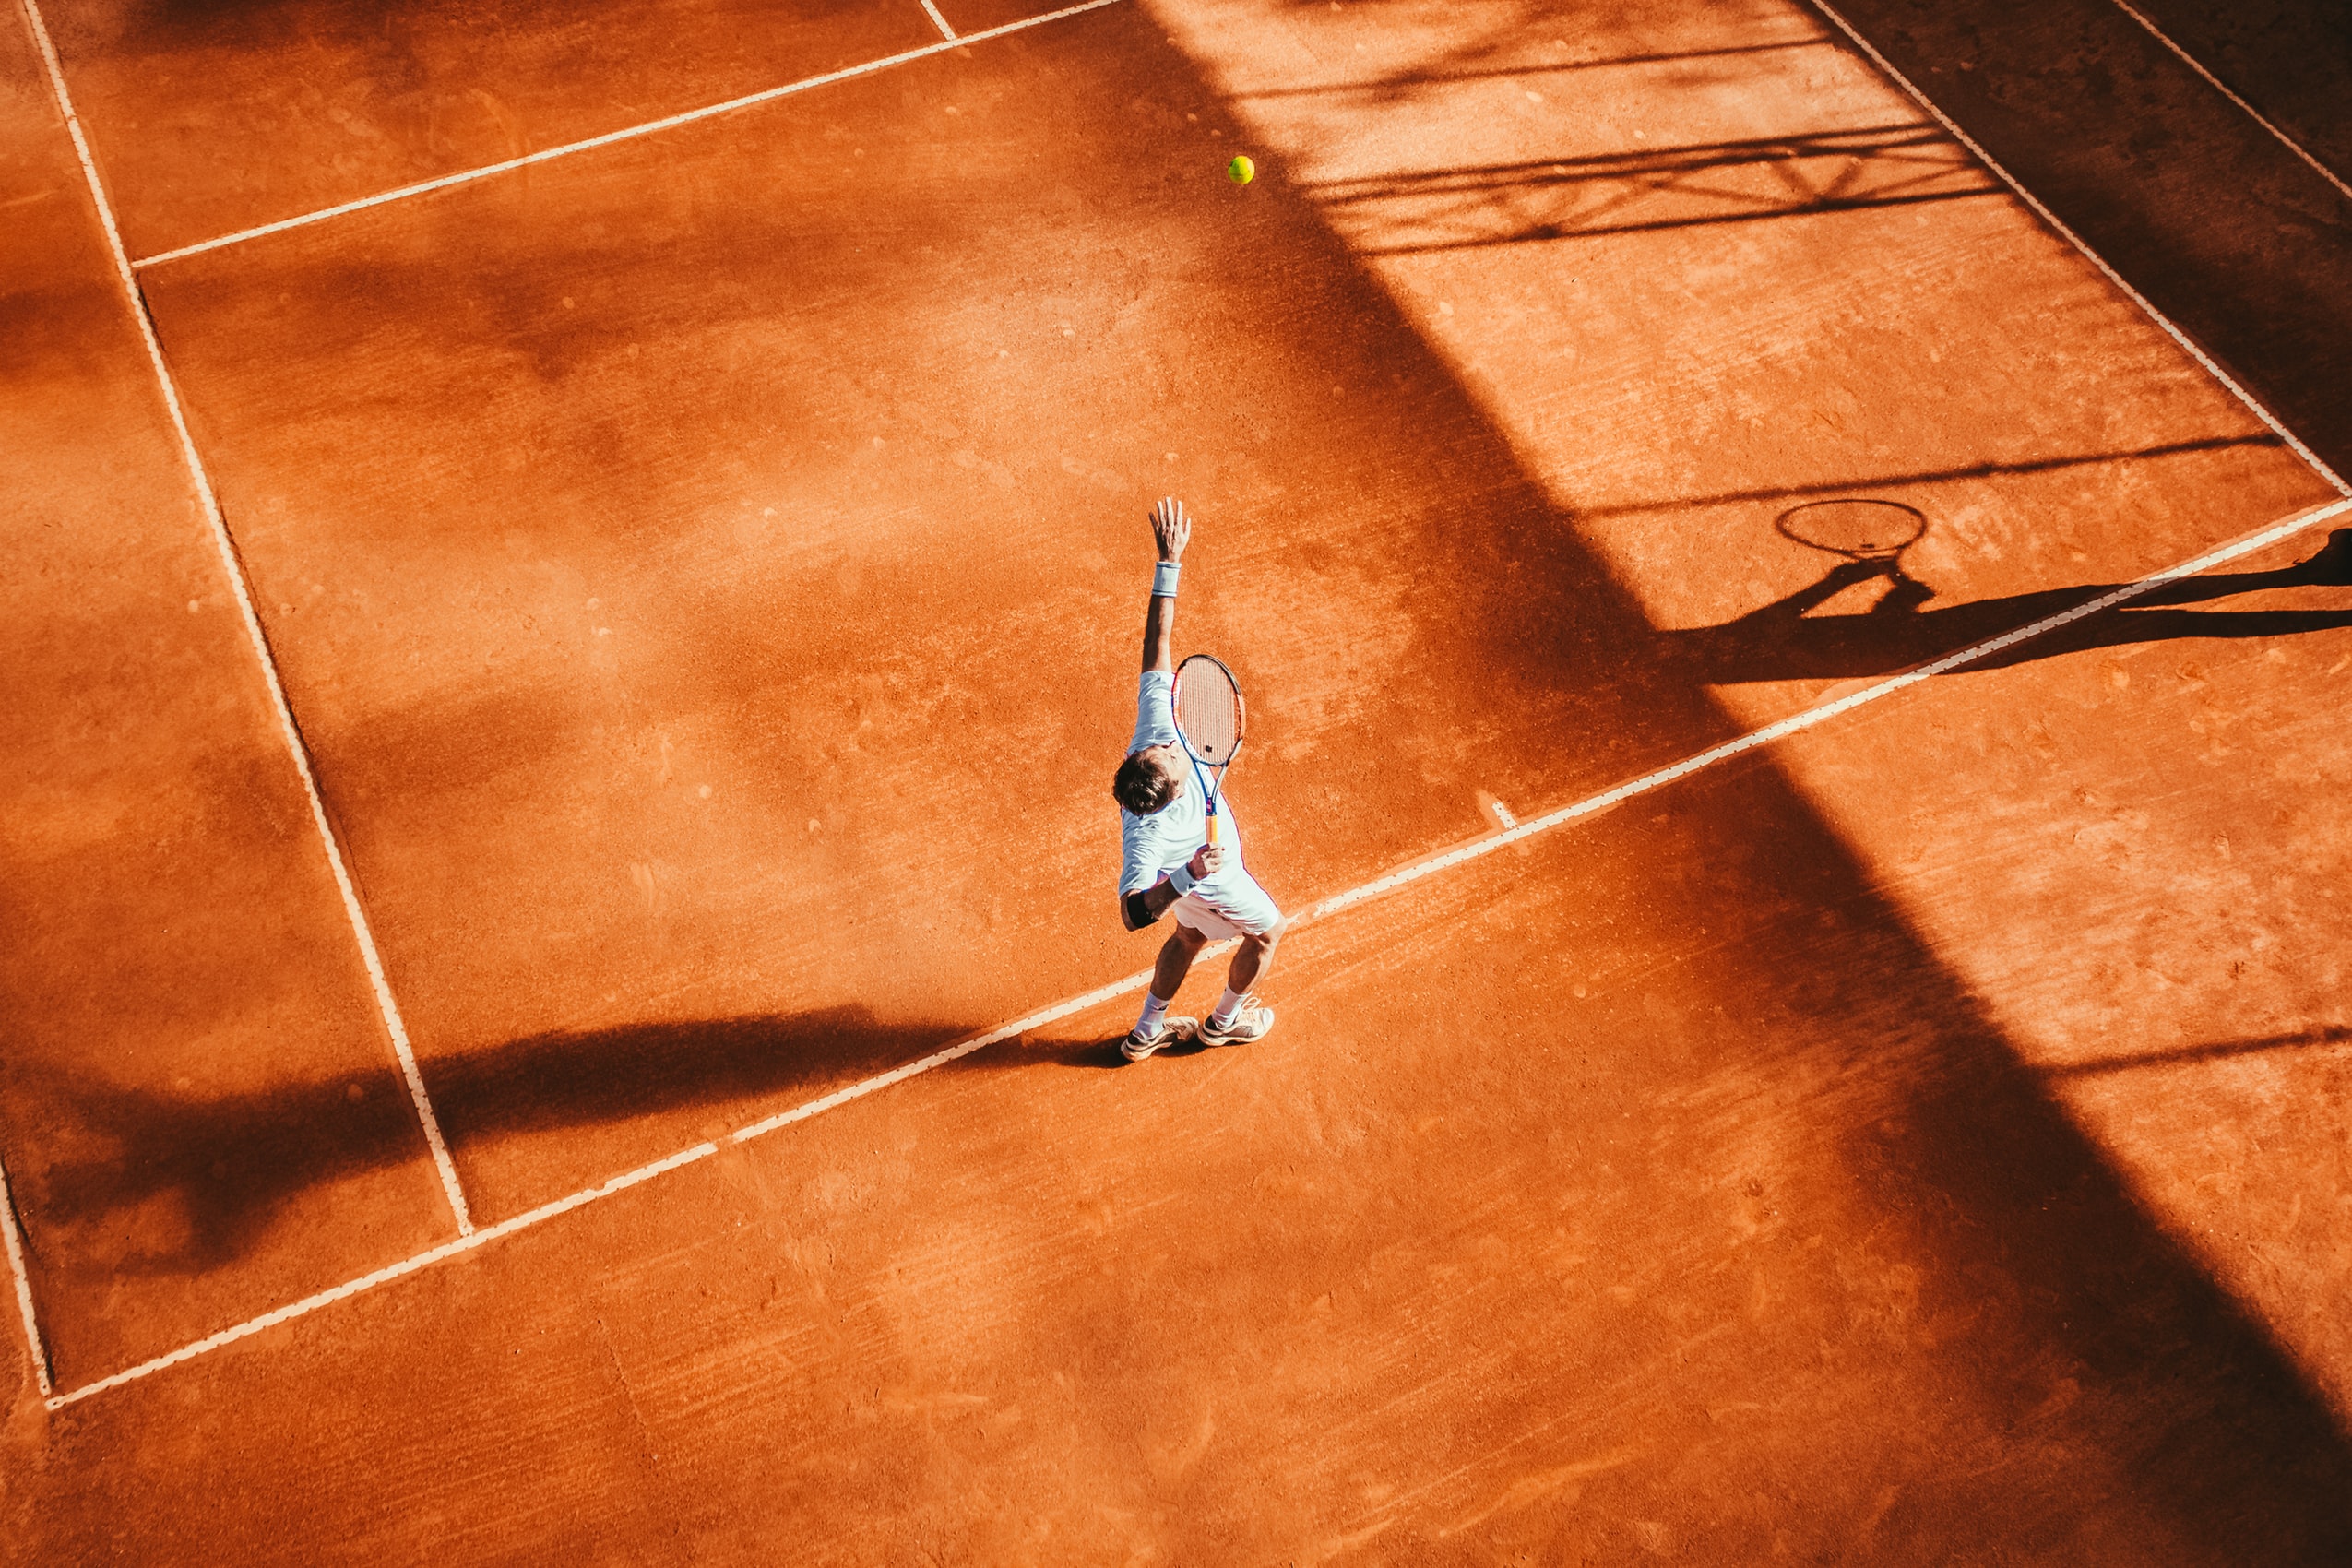 Ace Match, la app de competición del tenis social